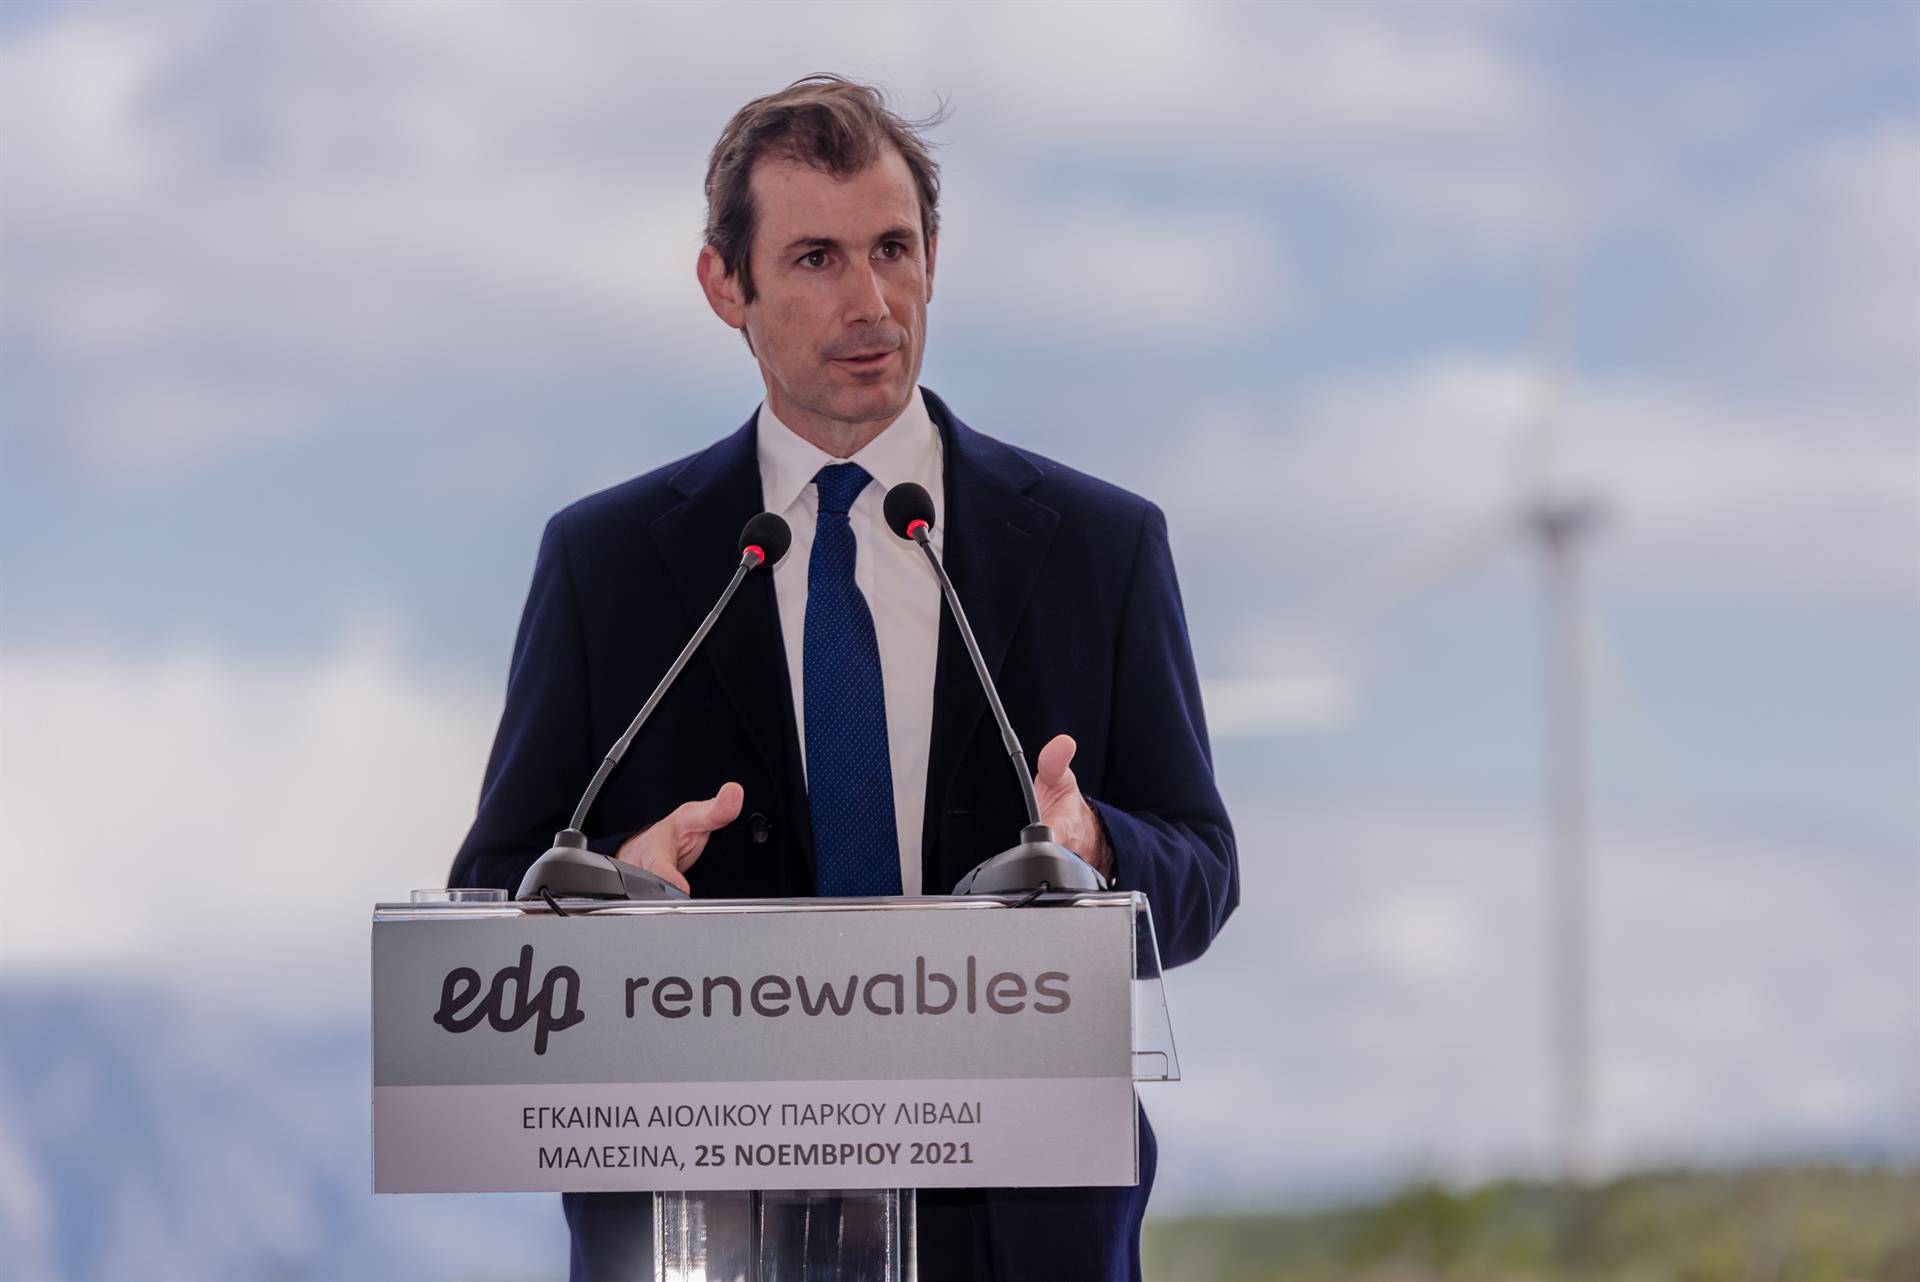 El consejero delegado de EDP y EDPR, Miguel Stilwell, inaugura un parque eólico en Grecia. FOTO: EDP